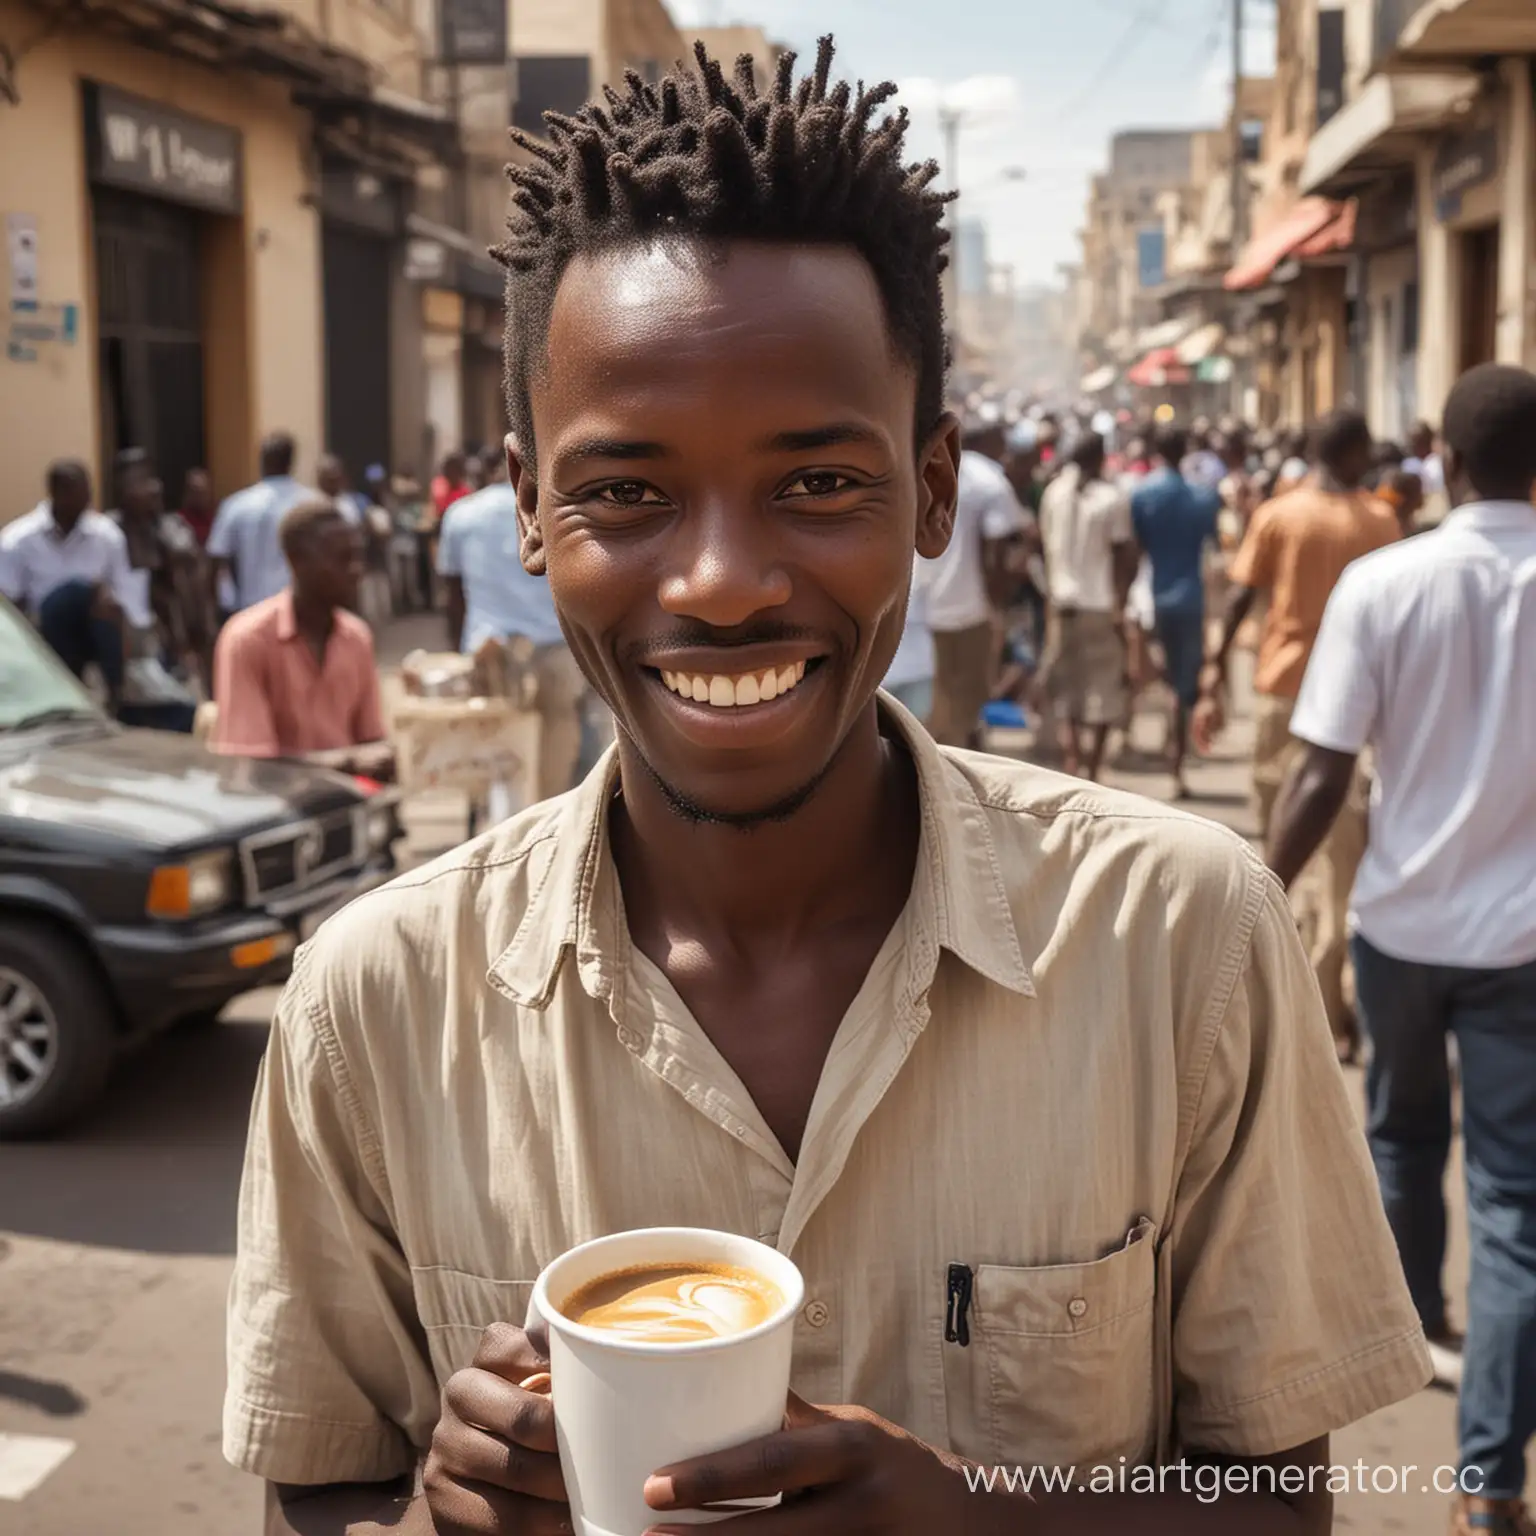  кофе, африка, сильная жара, на улице, счастье от кофе, люди вокруг смотрят